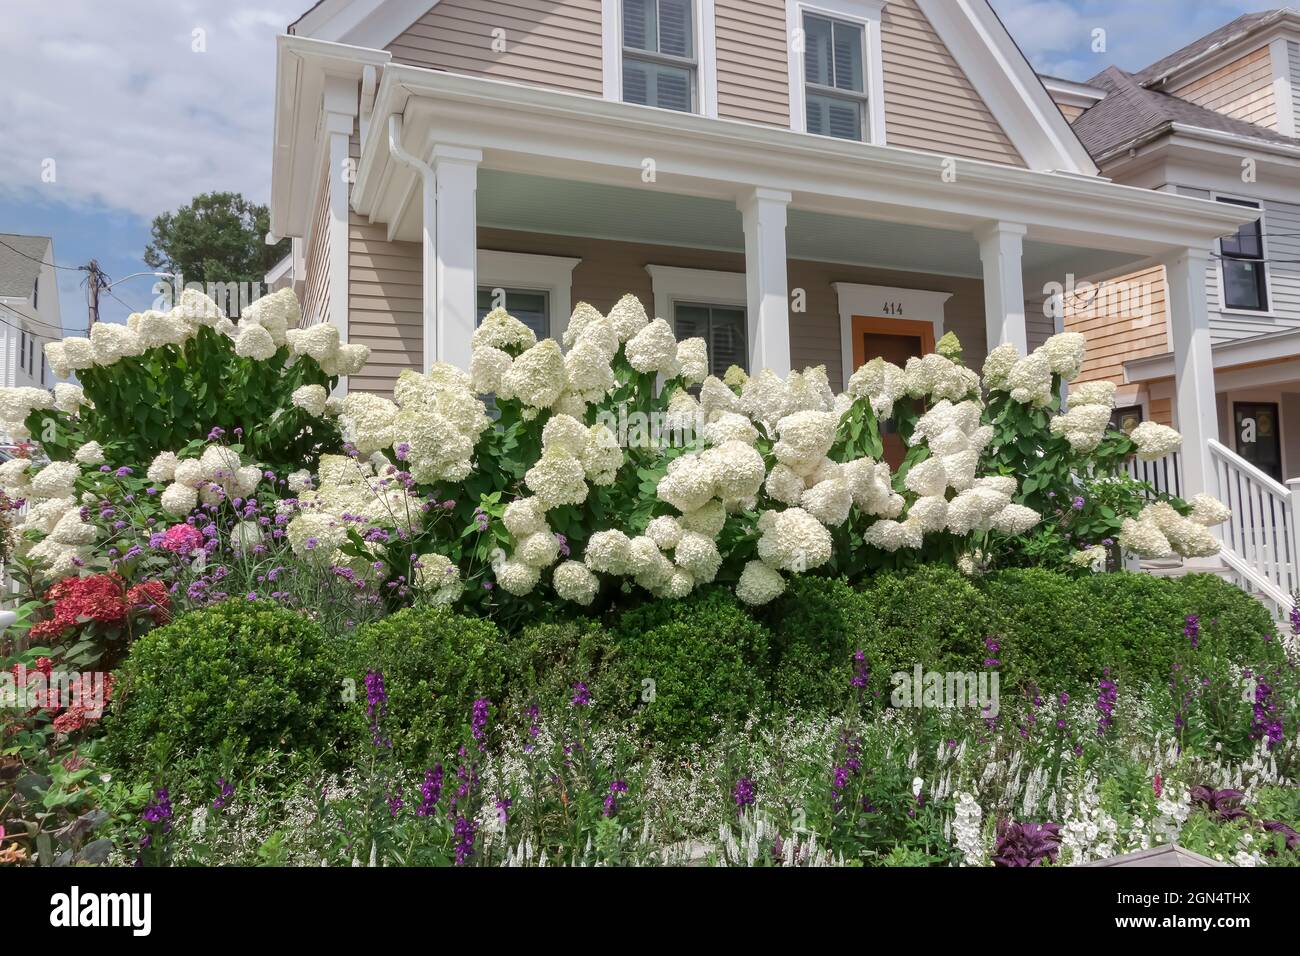 Arbustos de hydrangea blanca (hydrangea paniculata) que crecen en el patio delantero de una casa en Cape Cod, Massachusetts, EE.UU. Foto de stock